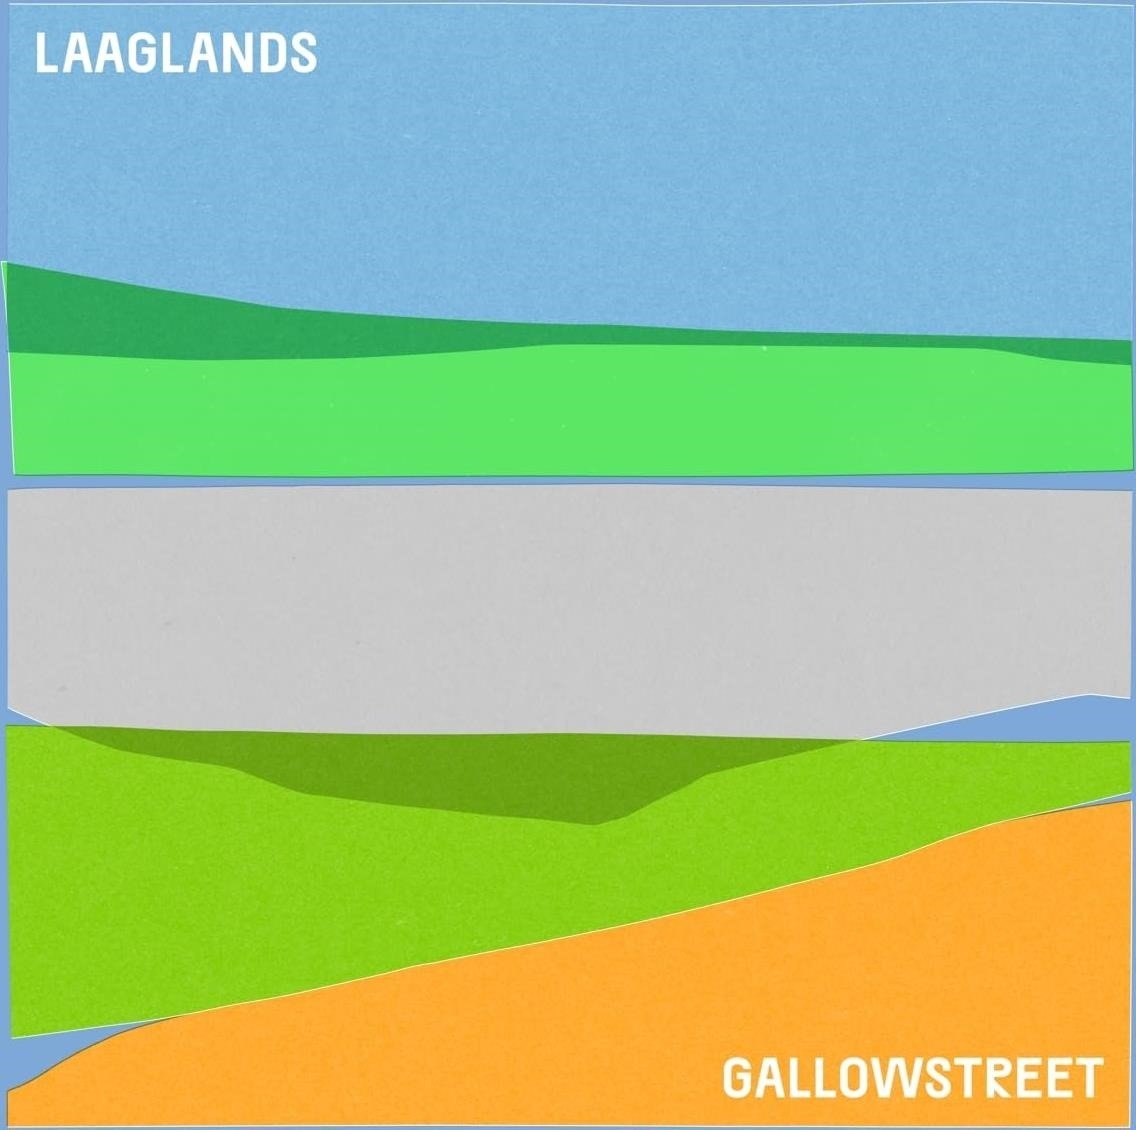 CD Shop - GALLOW STREET LAAGLANDS